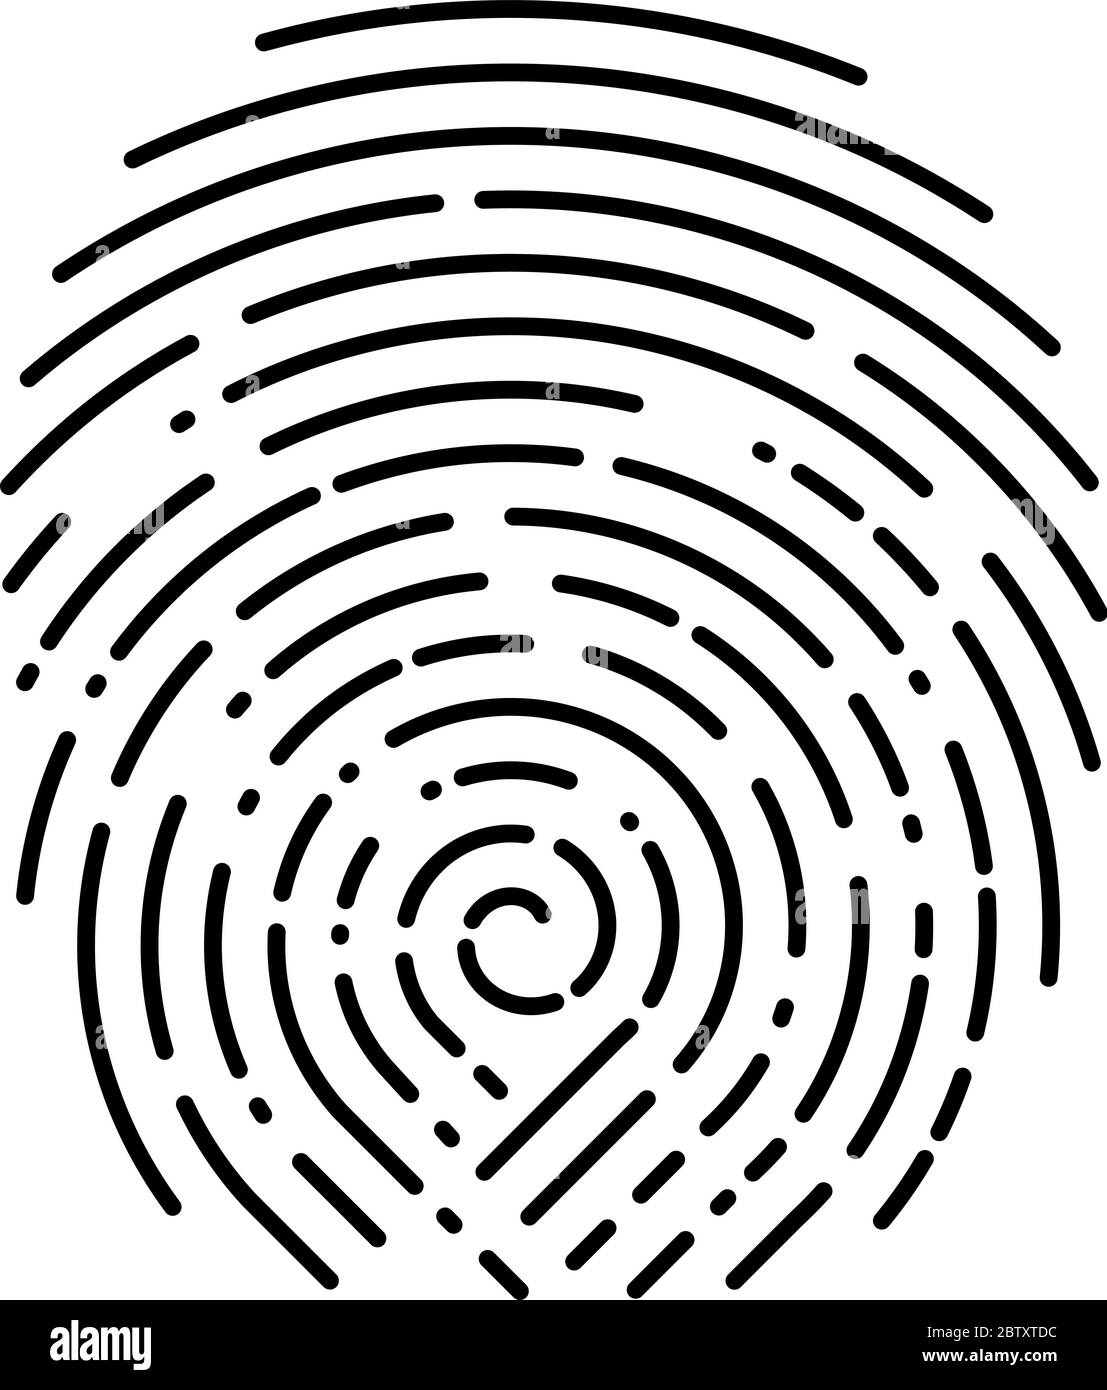 Fingerprint design vector illustration on white. Rounded lines design style Stock Vector